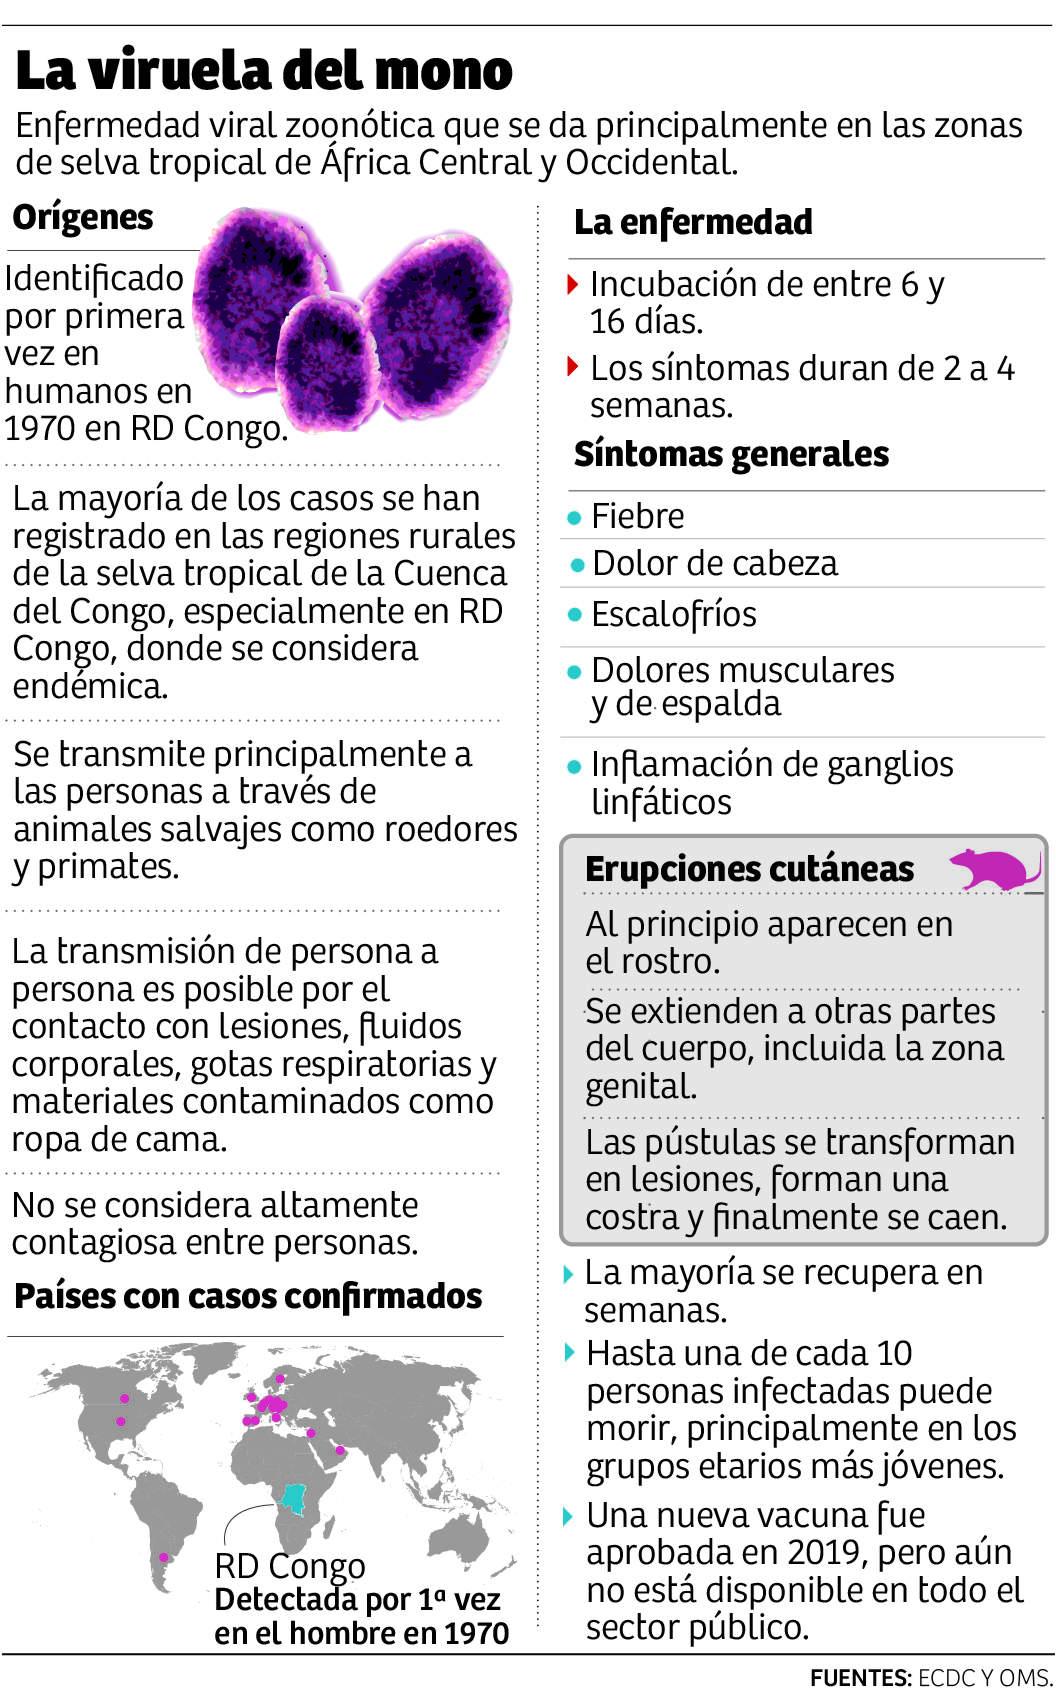 Honduras tiene pruebas PCR para detectar viruela del mono